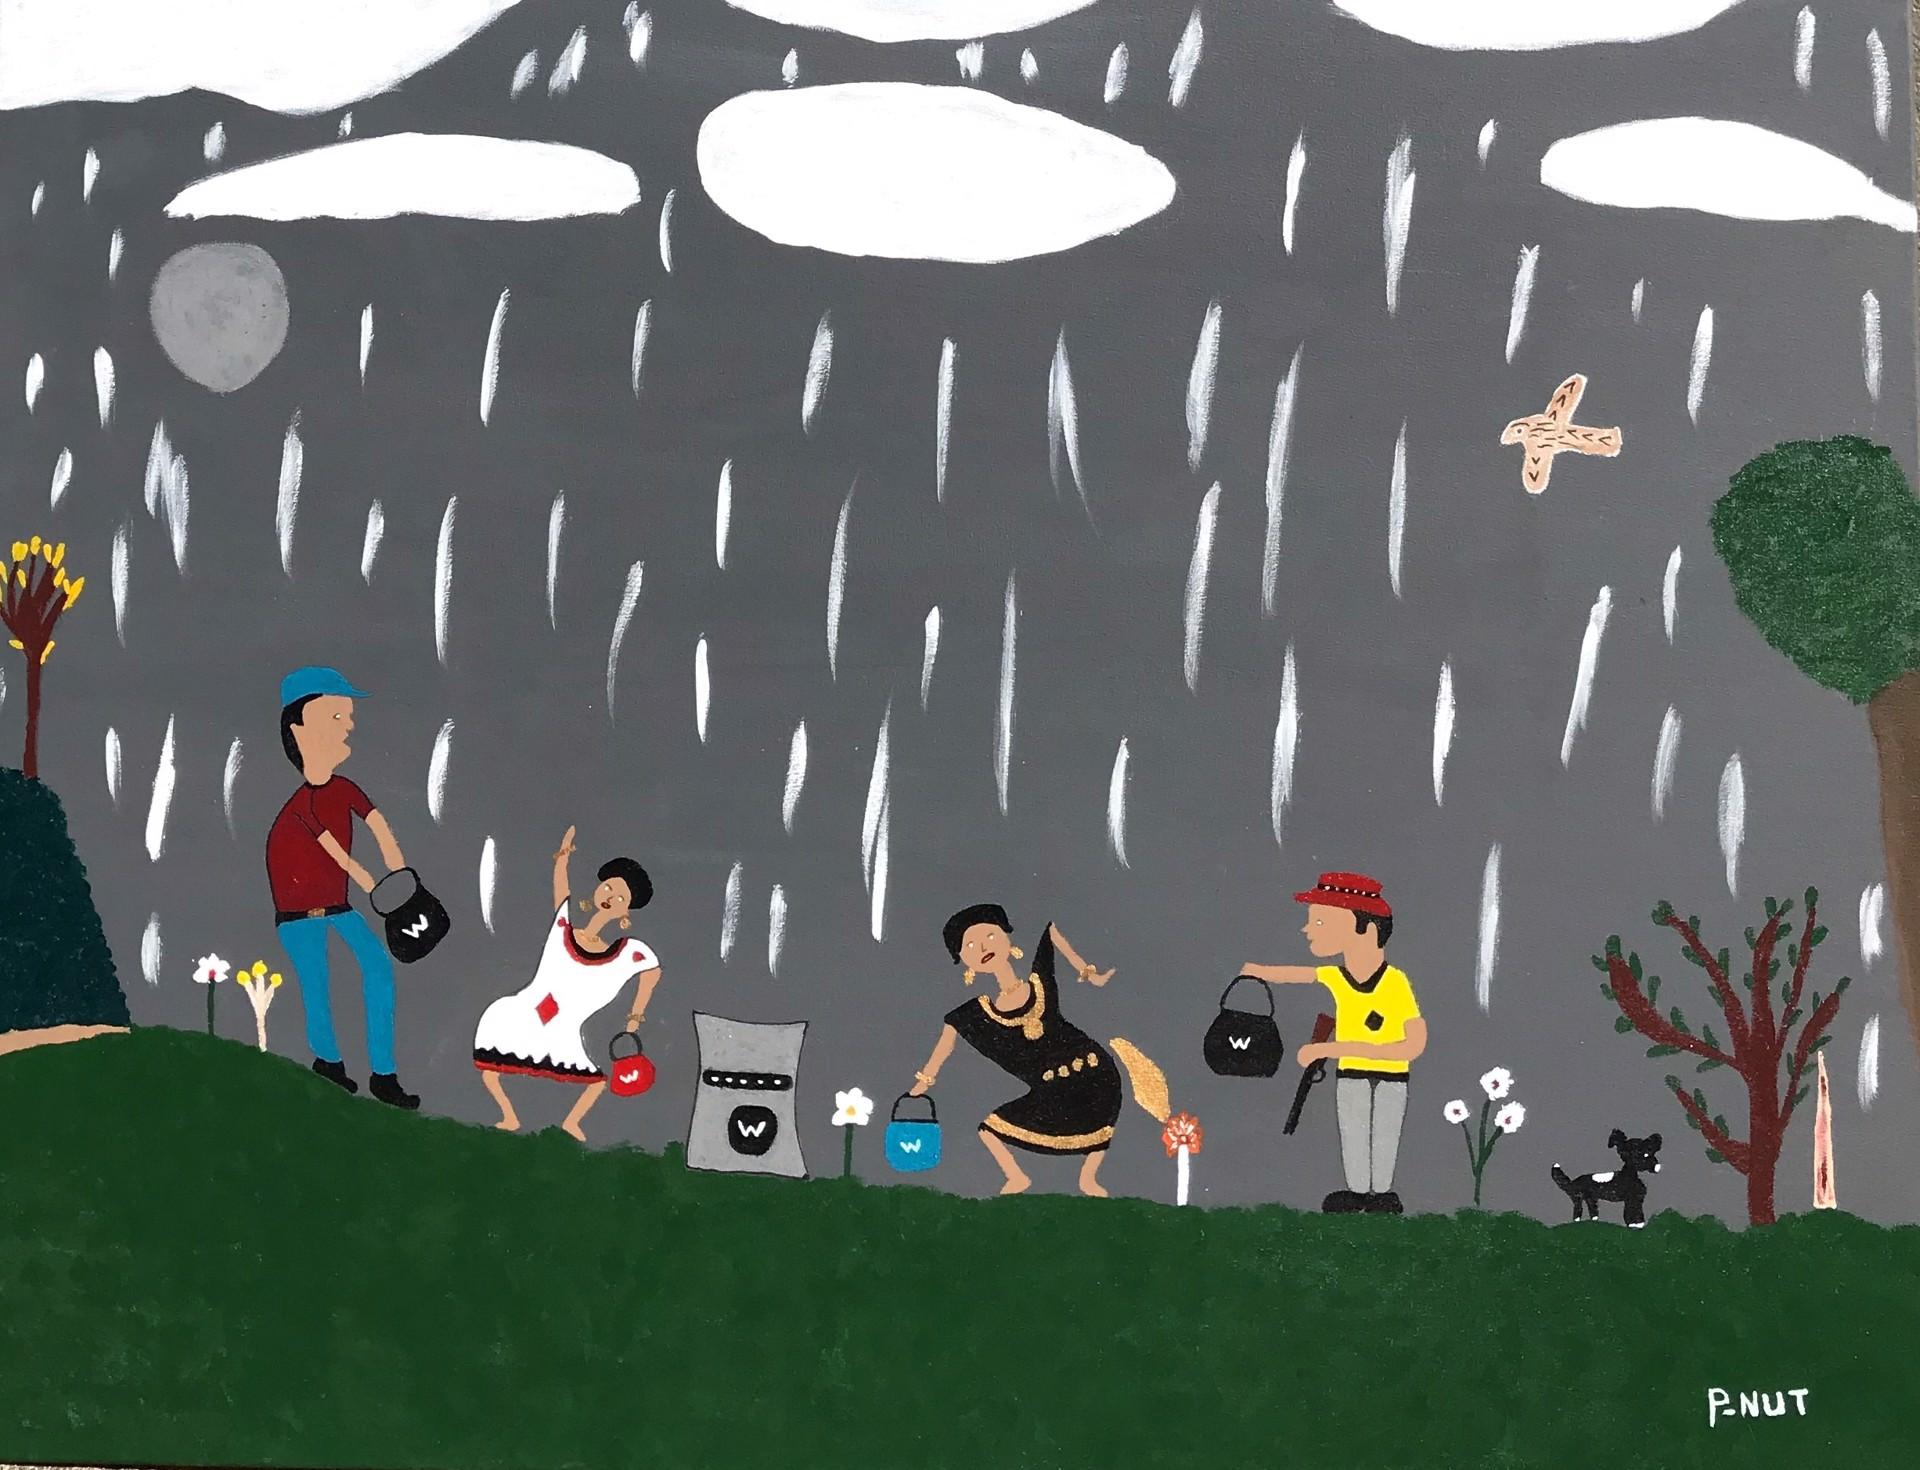 Landscape Painting P-Nut - Holy Rain & vidéo, une peinture folklorique vernaculaire réalisée par un autodidacte africain américain